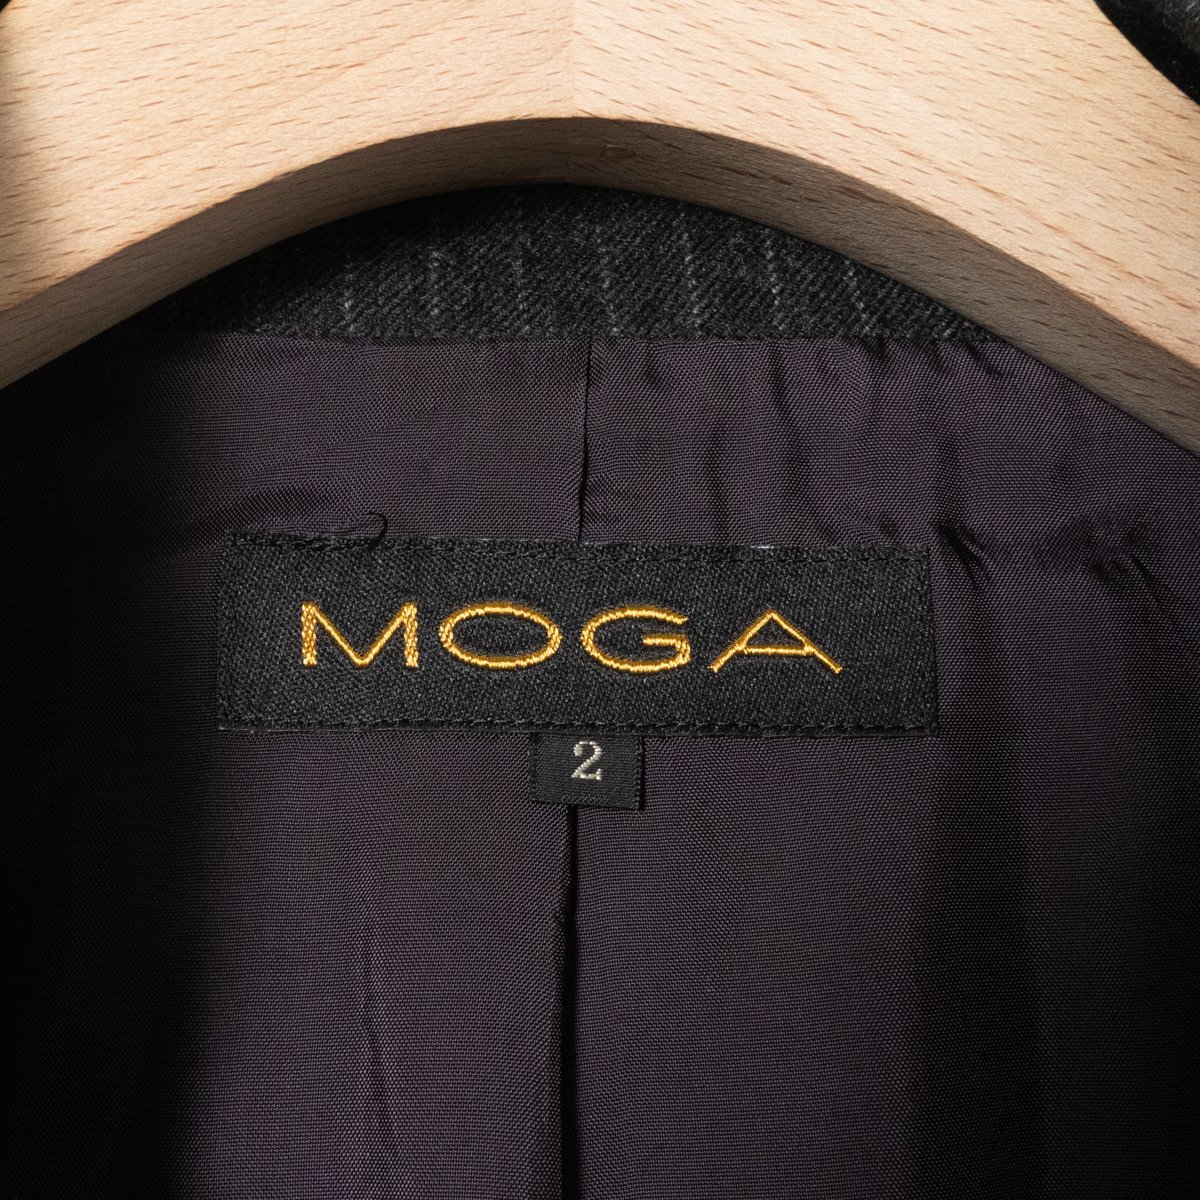 MOGA モガ セットアップ スーツ ジャケット 2 スカート 3 総柄 ストライプ柄 ウール100% グレー 綺麗め フォーマル 秋冬_画像2